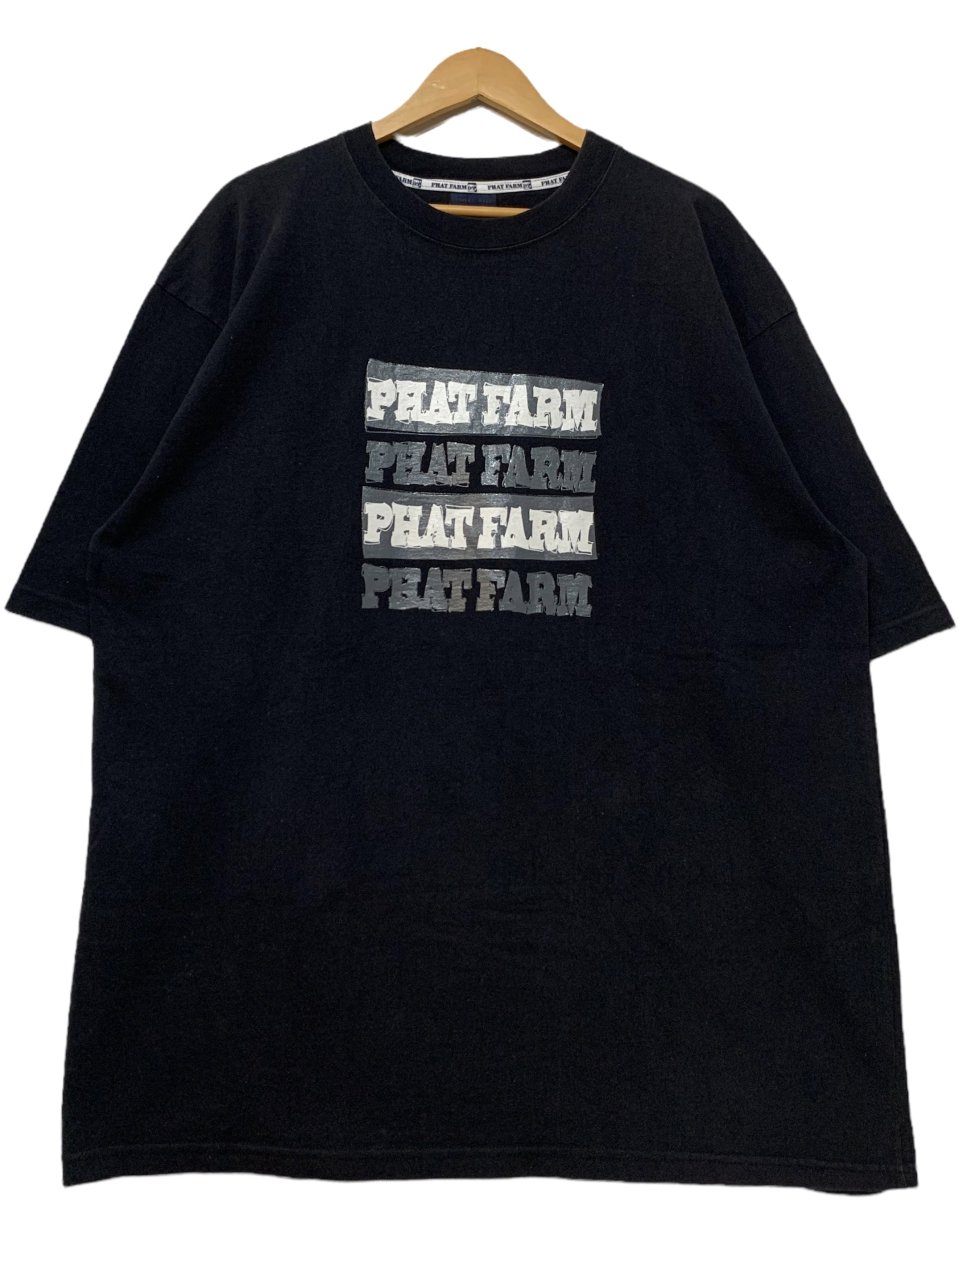 ファットファーム PHAT LIFE STYLEロゴ 半袖 Tシャツ XL